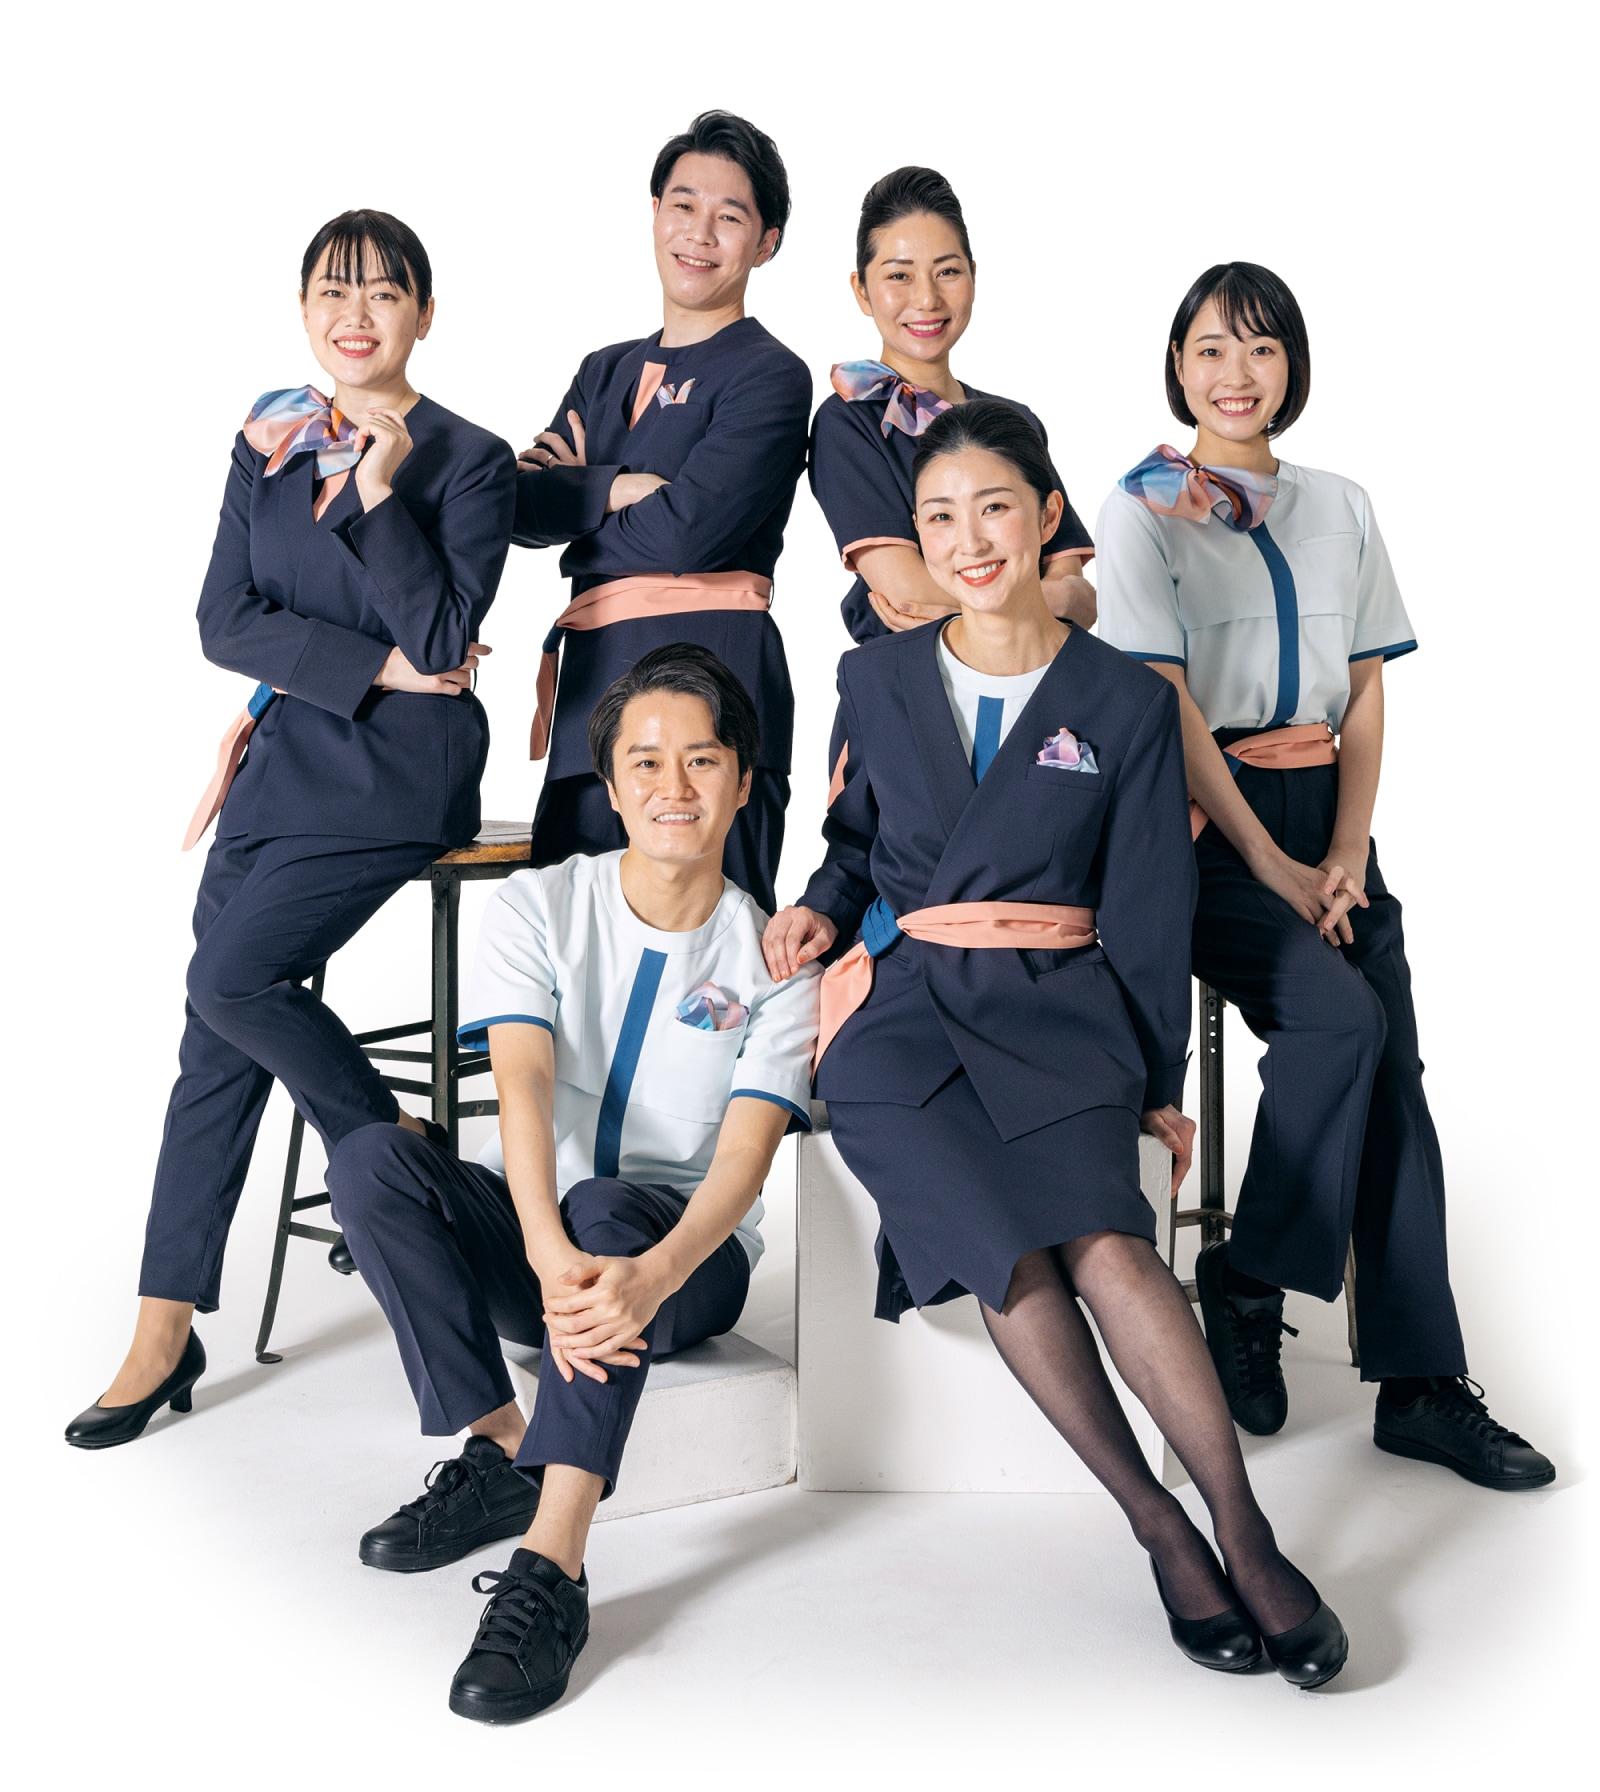 นี่คือรูปภาพของพนักงานต้อนรับบนเครื่องบิน 6 คนที่สวมเครื่องแบบ Air Japan